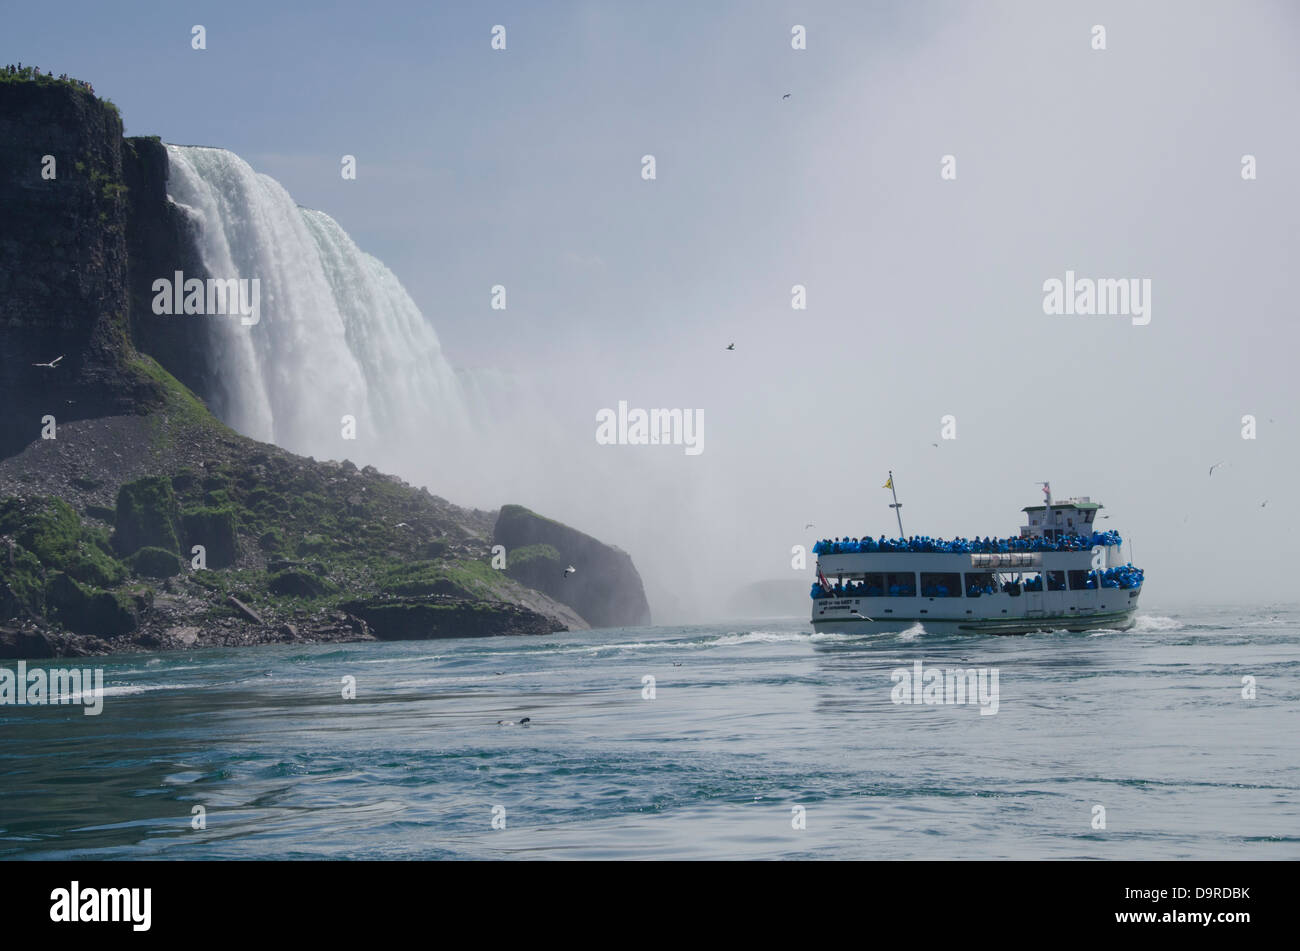 USA / Kanada, New York, Niagara Falls. USA Seite, Aussicht auf amerikanischen Wasserfälle mit Magd das Touristenboot Nebel. Stockfoto